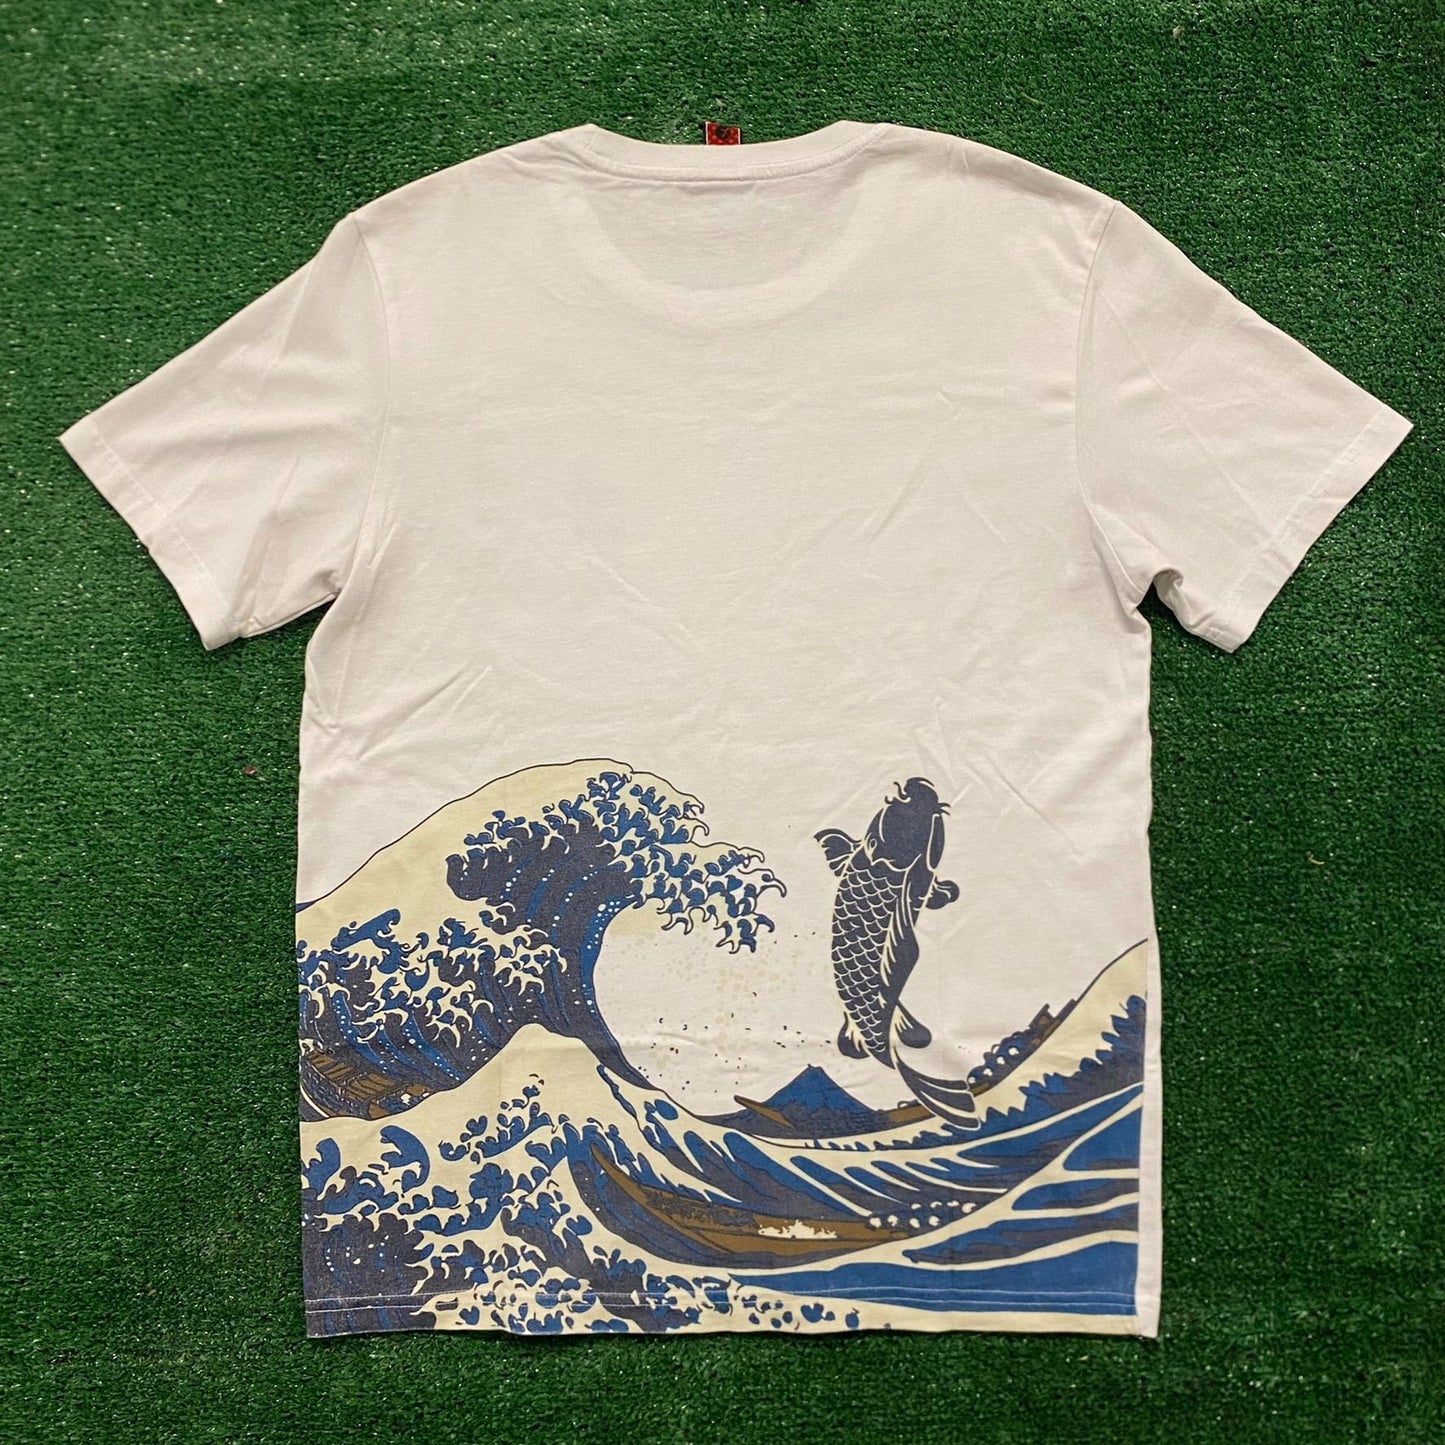 Japan Ocean Artwork Vintage Japanese Painting T-Shirt